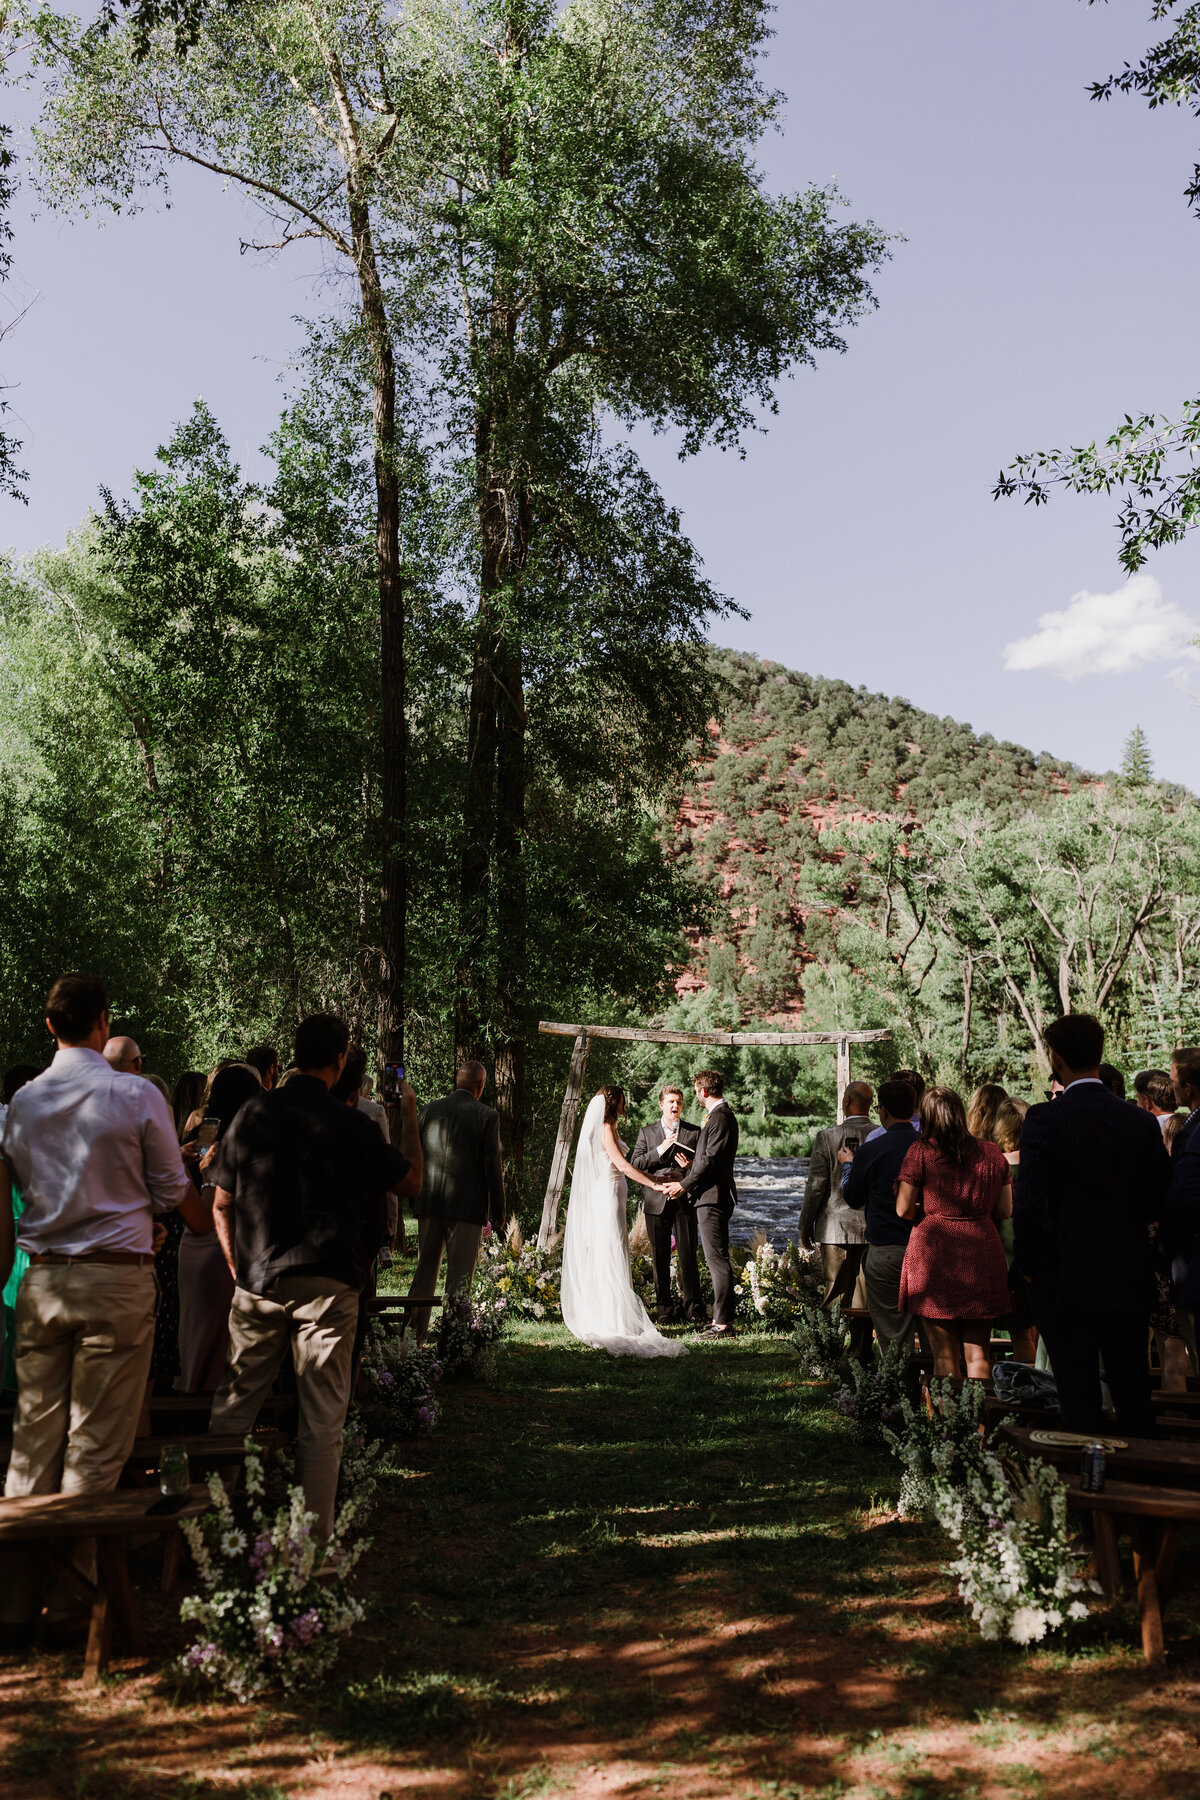 Outdoor wedding ceremony at Dallenbach Ranch Colorado